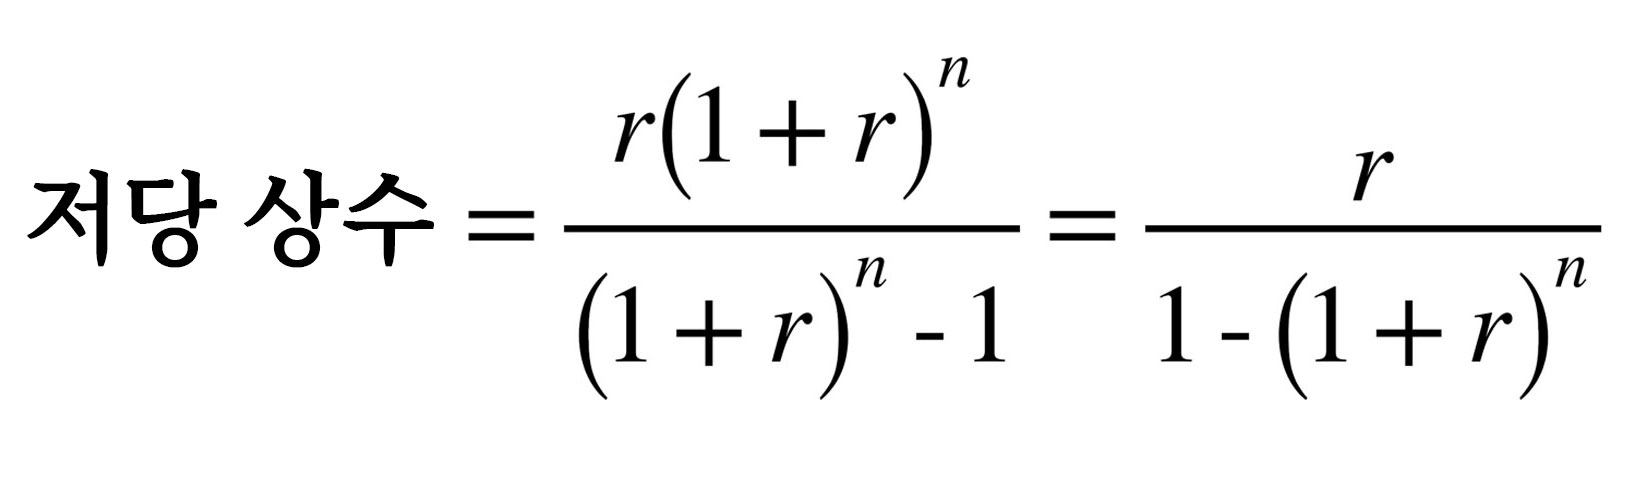 저당 상수 부동산 계산 공식